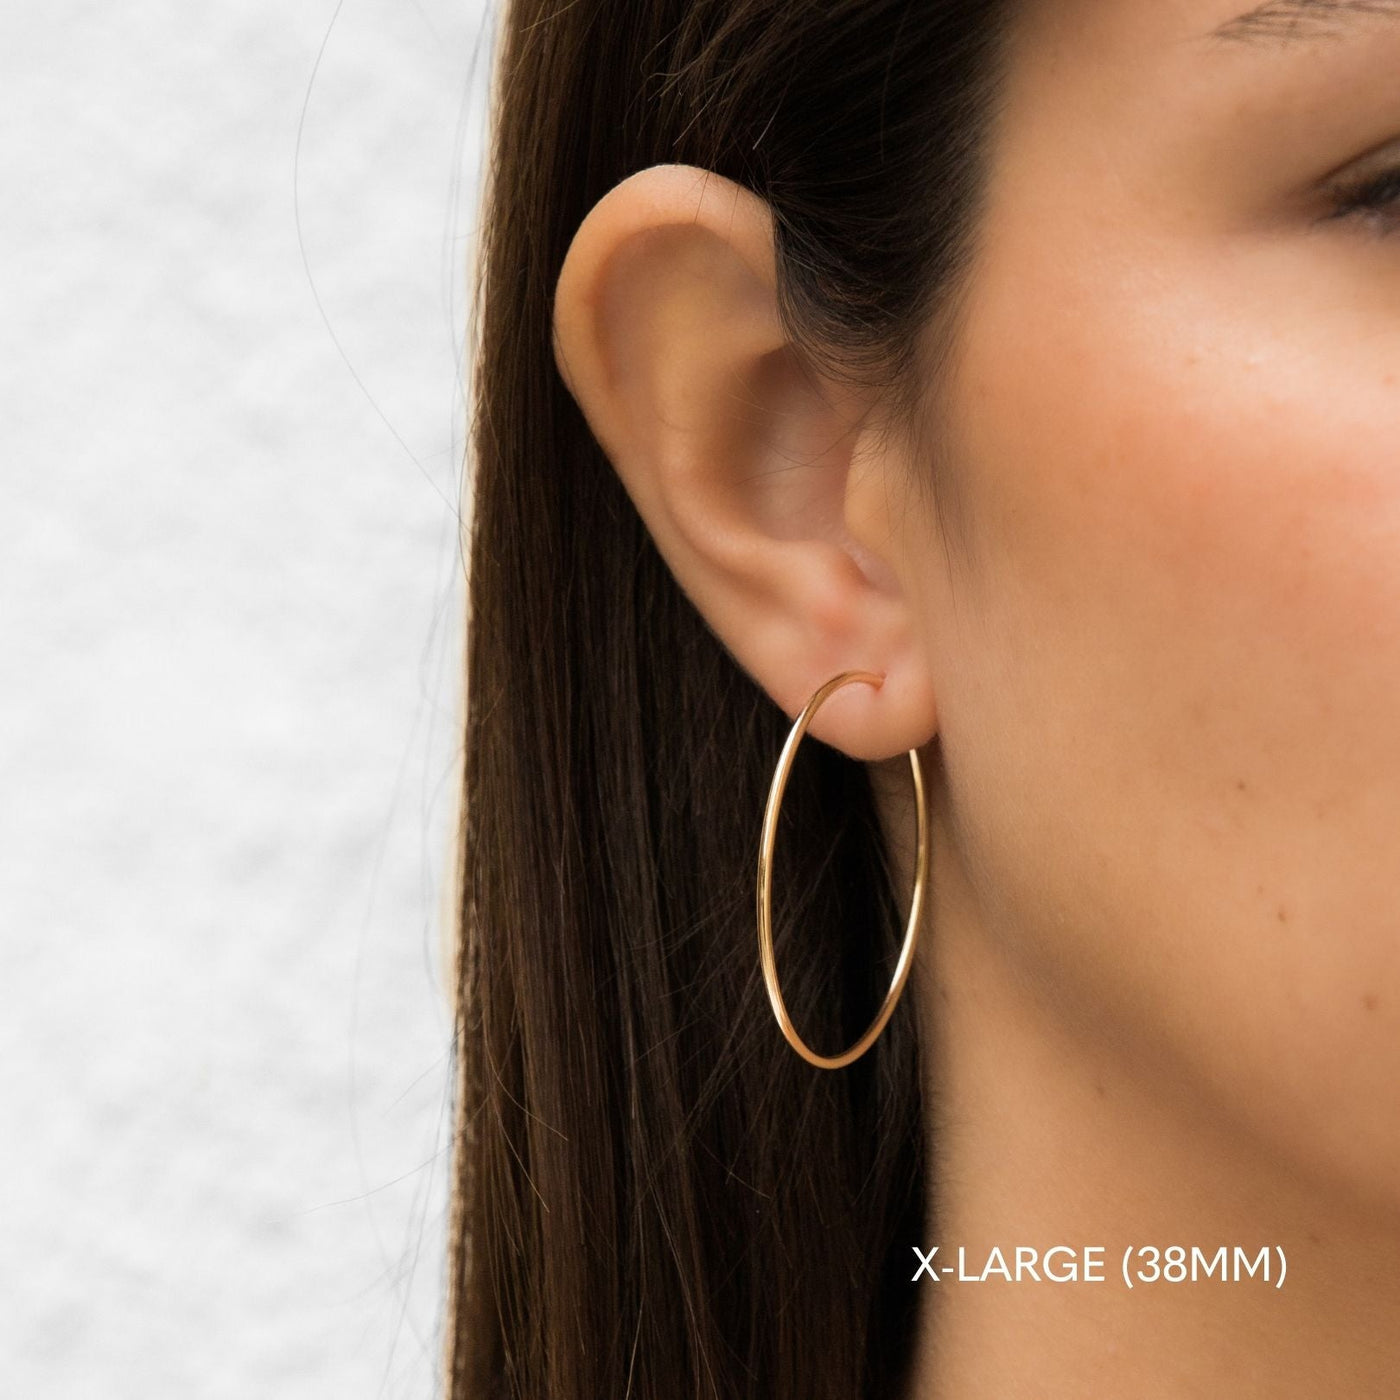 14K Gold Small Hoop Earrings - JCPenney